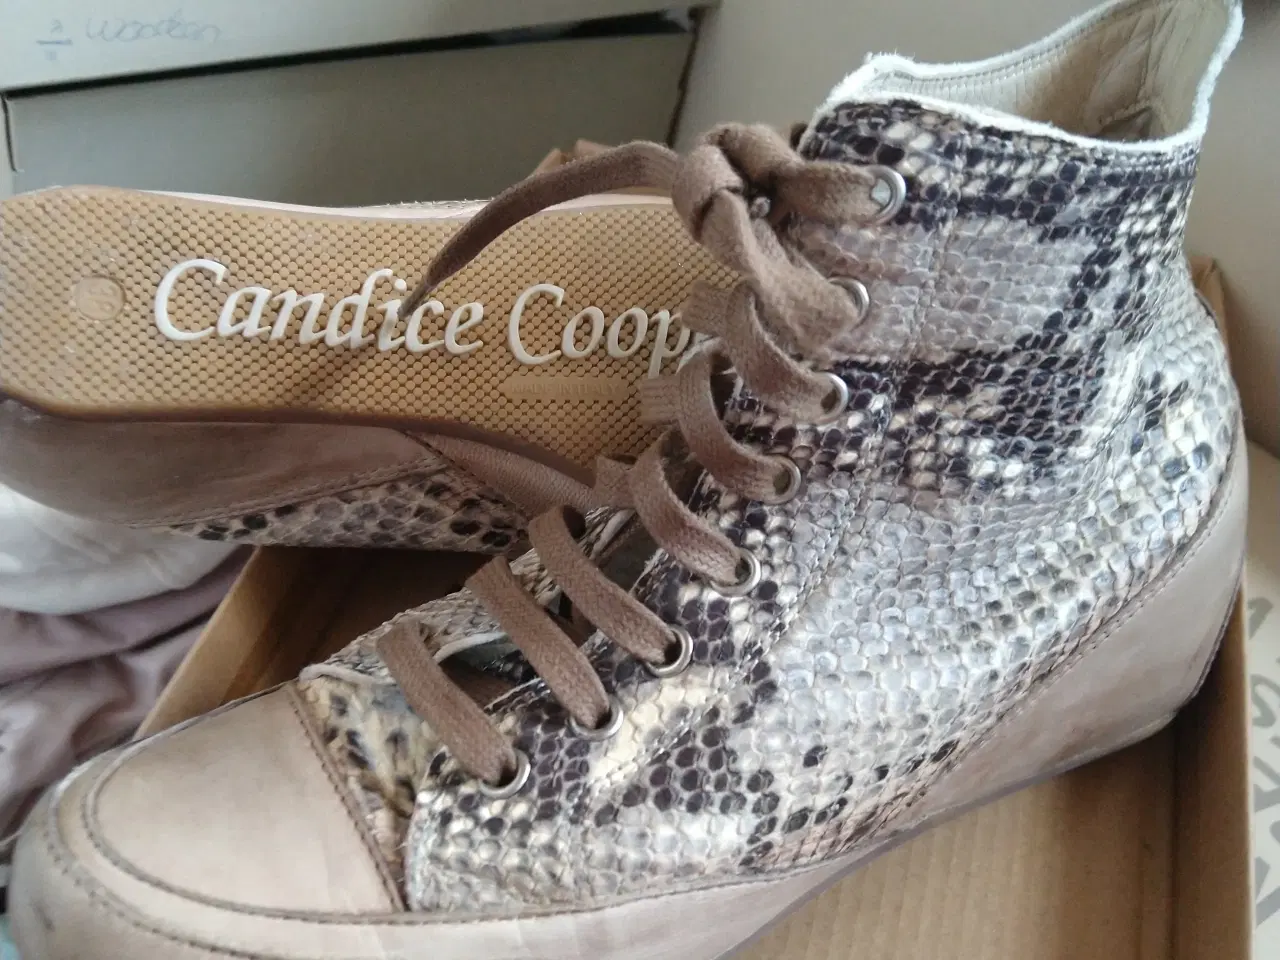 Billede 2 - Candice Cooper dame støvle.38